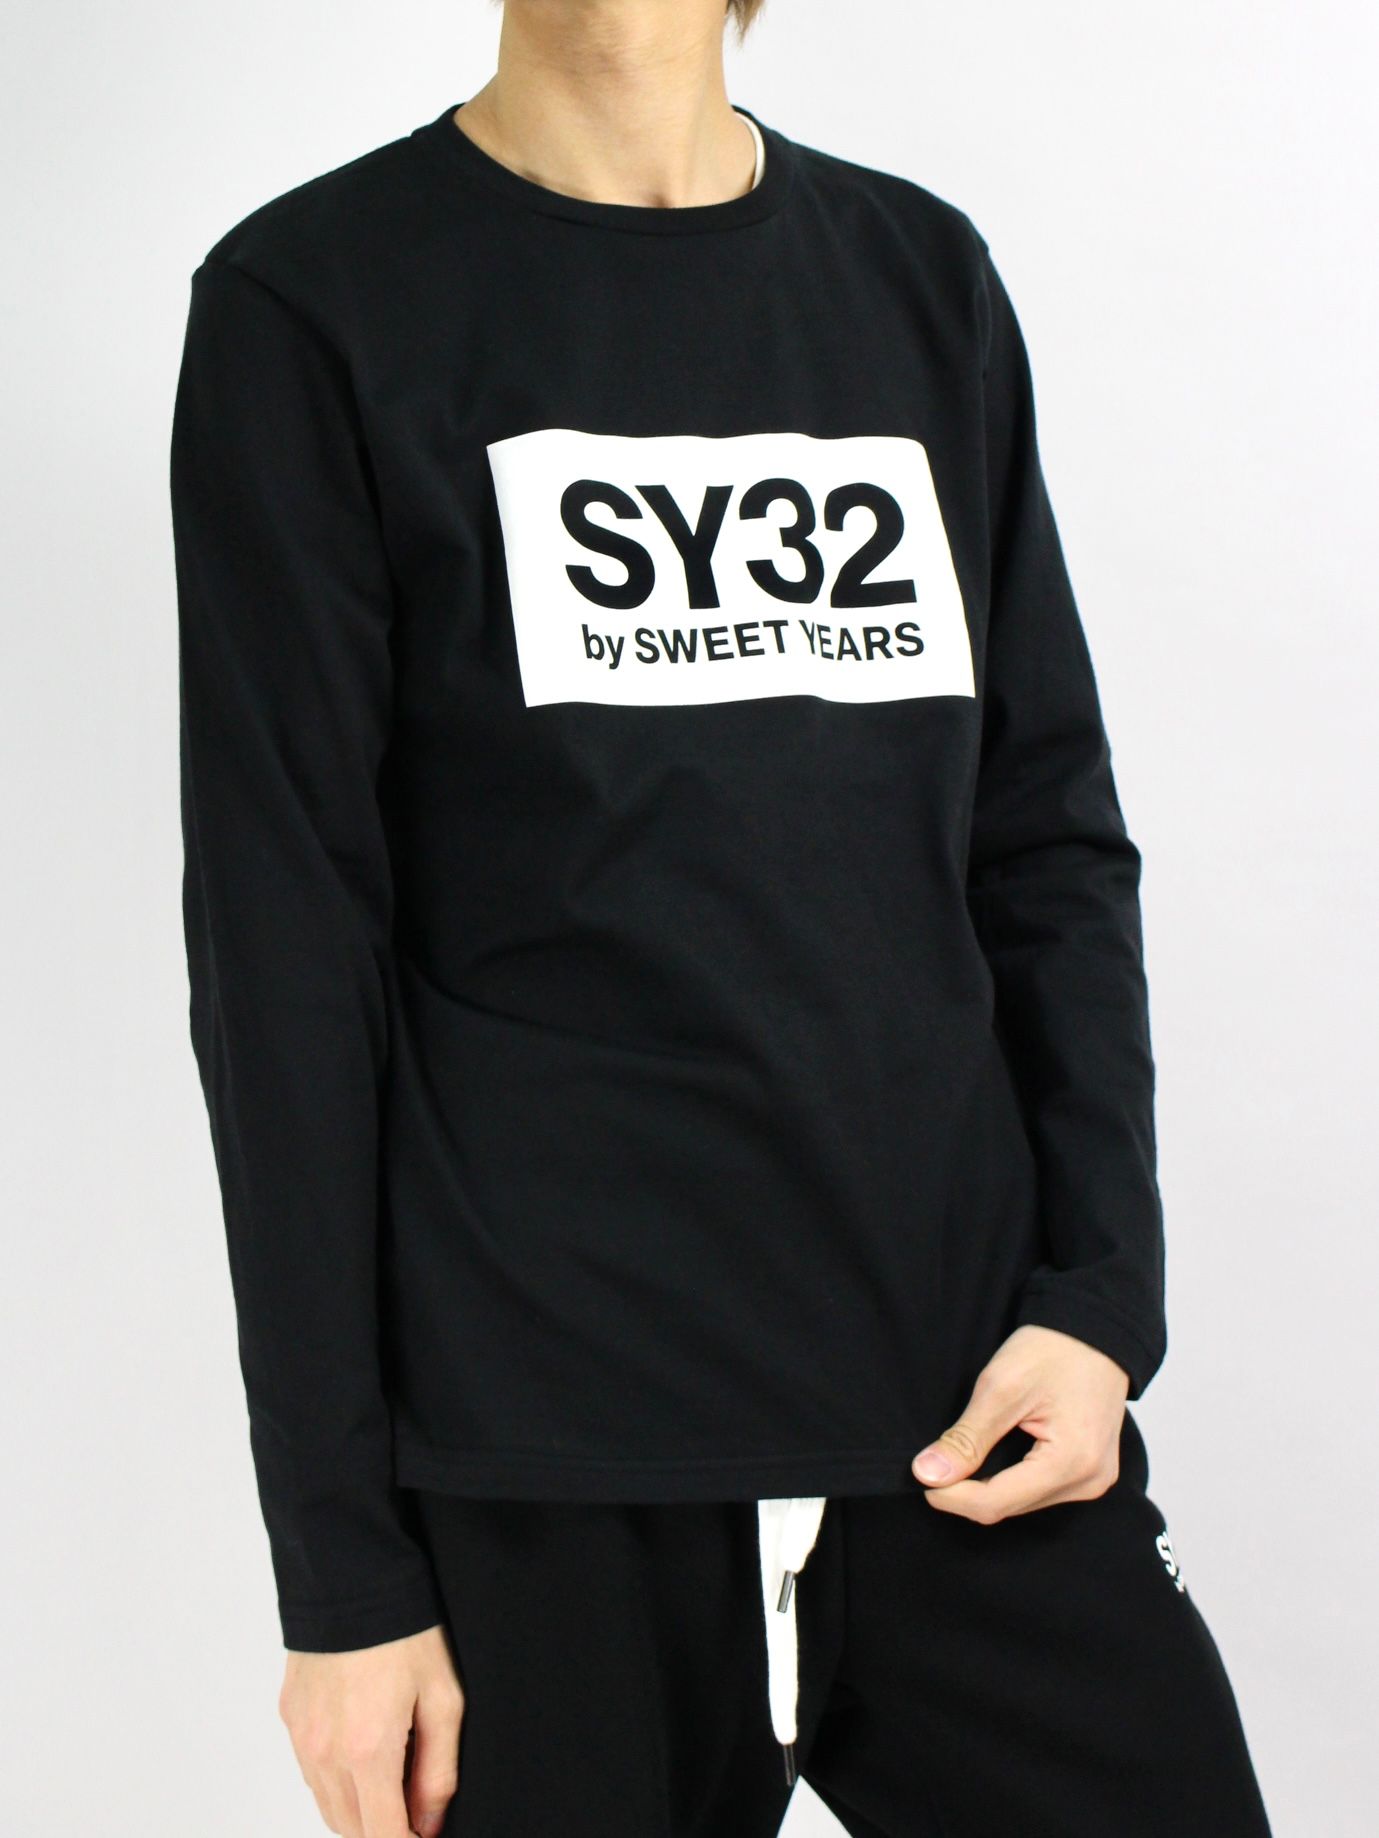 SY32 by SWEET YEARS - ボックスロゴ ロングスリーブTシャツ / BOX 